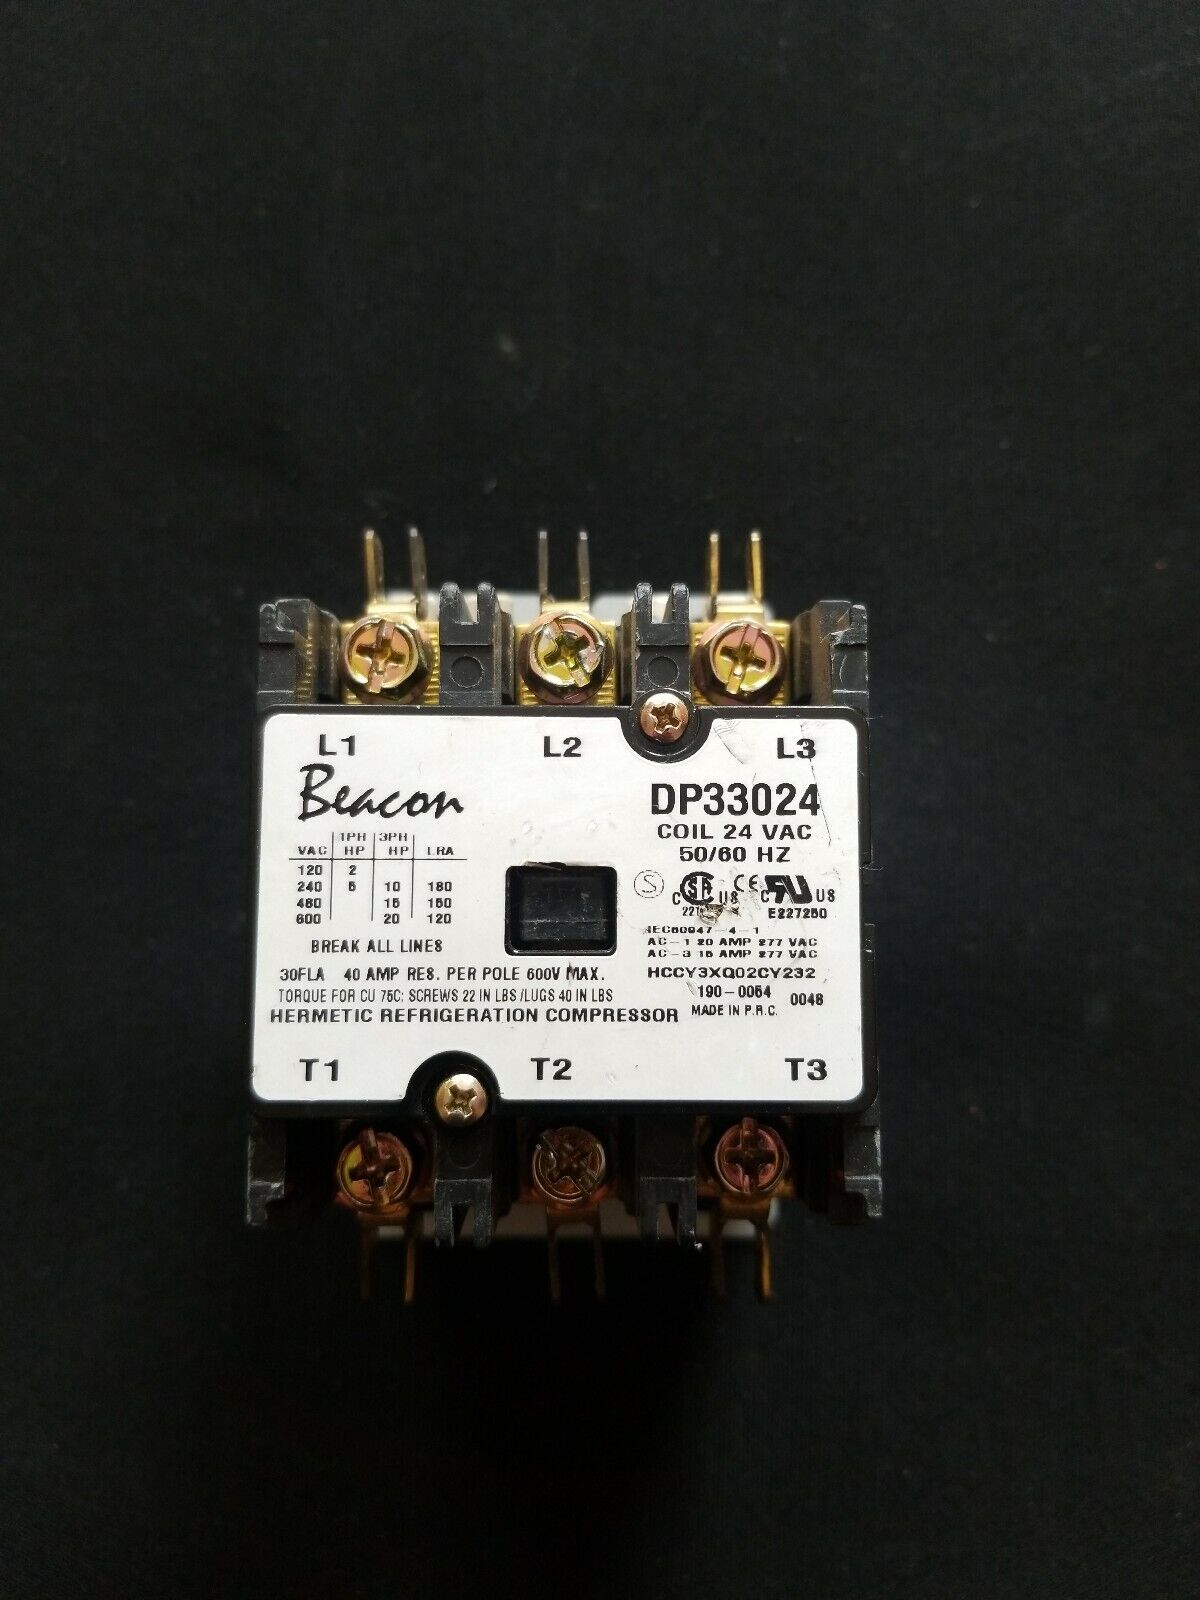 Beacon DP33024 Coil 24 vac 50/60 HZ Contactor